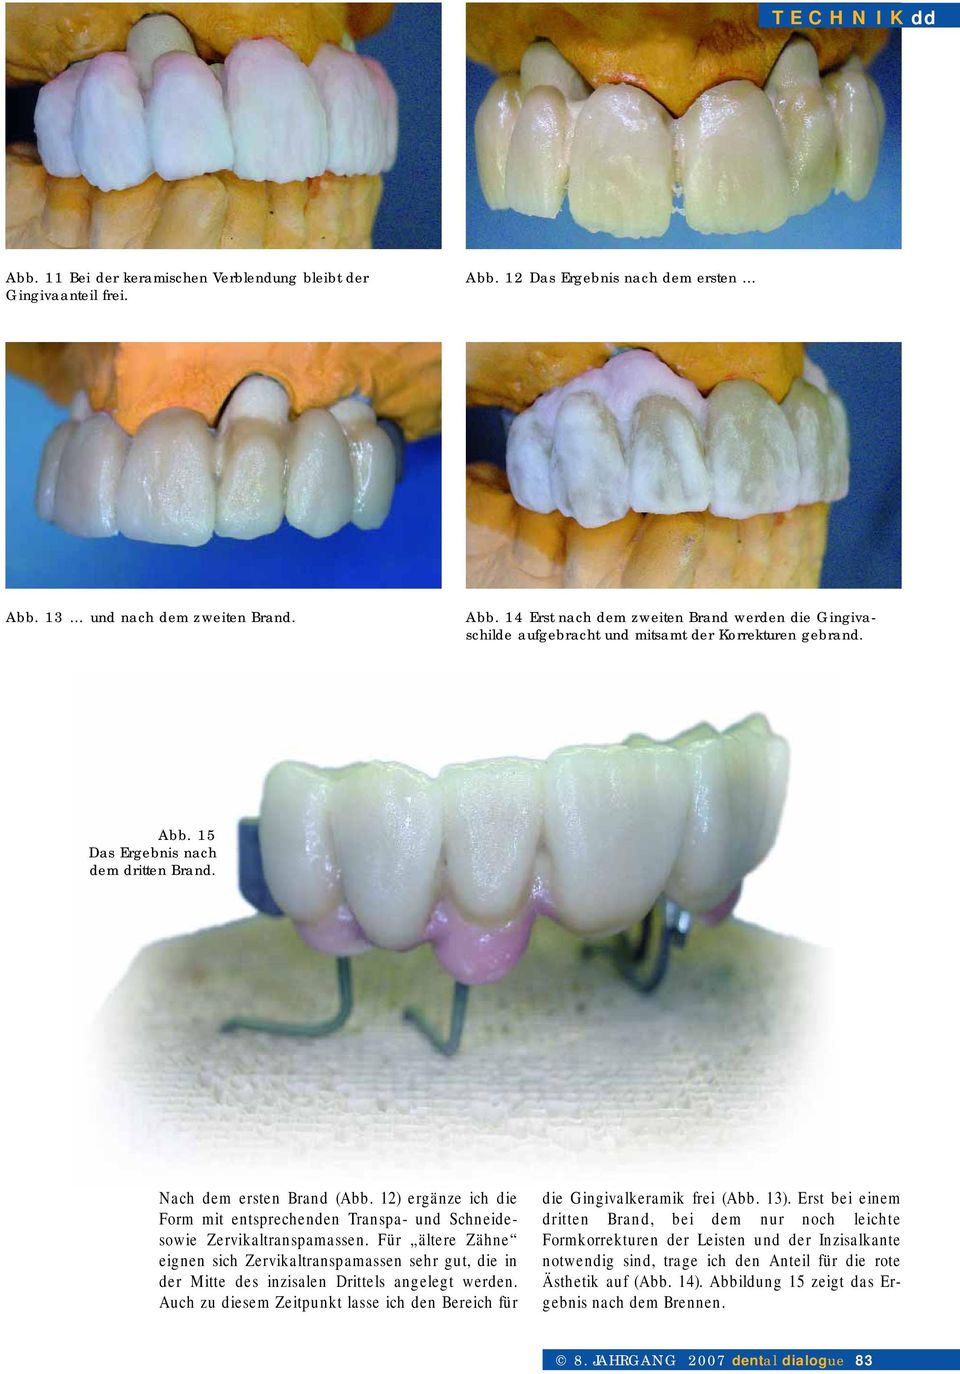 Für ältere Zähne eignen sich Zervikaltranspamassen sehr gut, die in der Mitte des inzisalen Drittels angelegt werden. Auch zu diesem Zeitpunkt lasse ich den Bereich für die Gingivalkeramik frei (Abb.